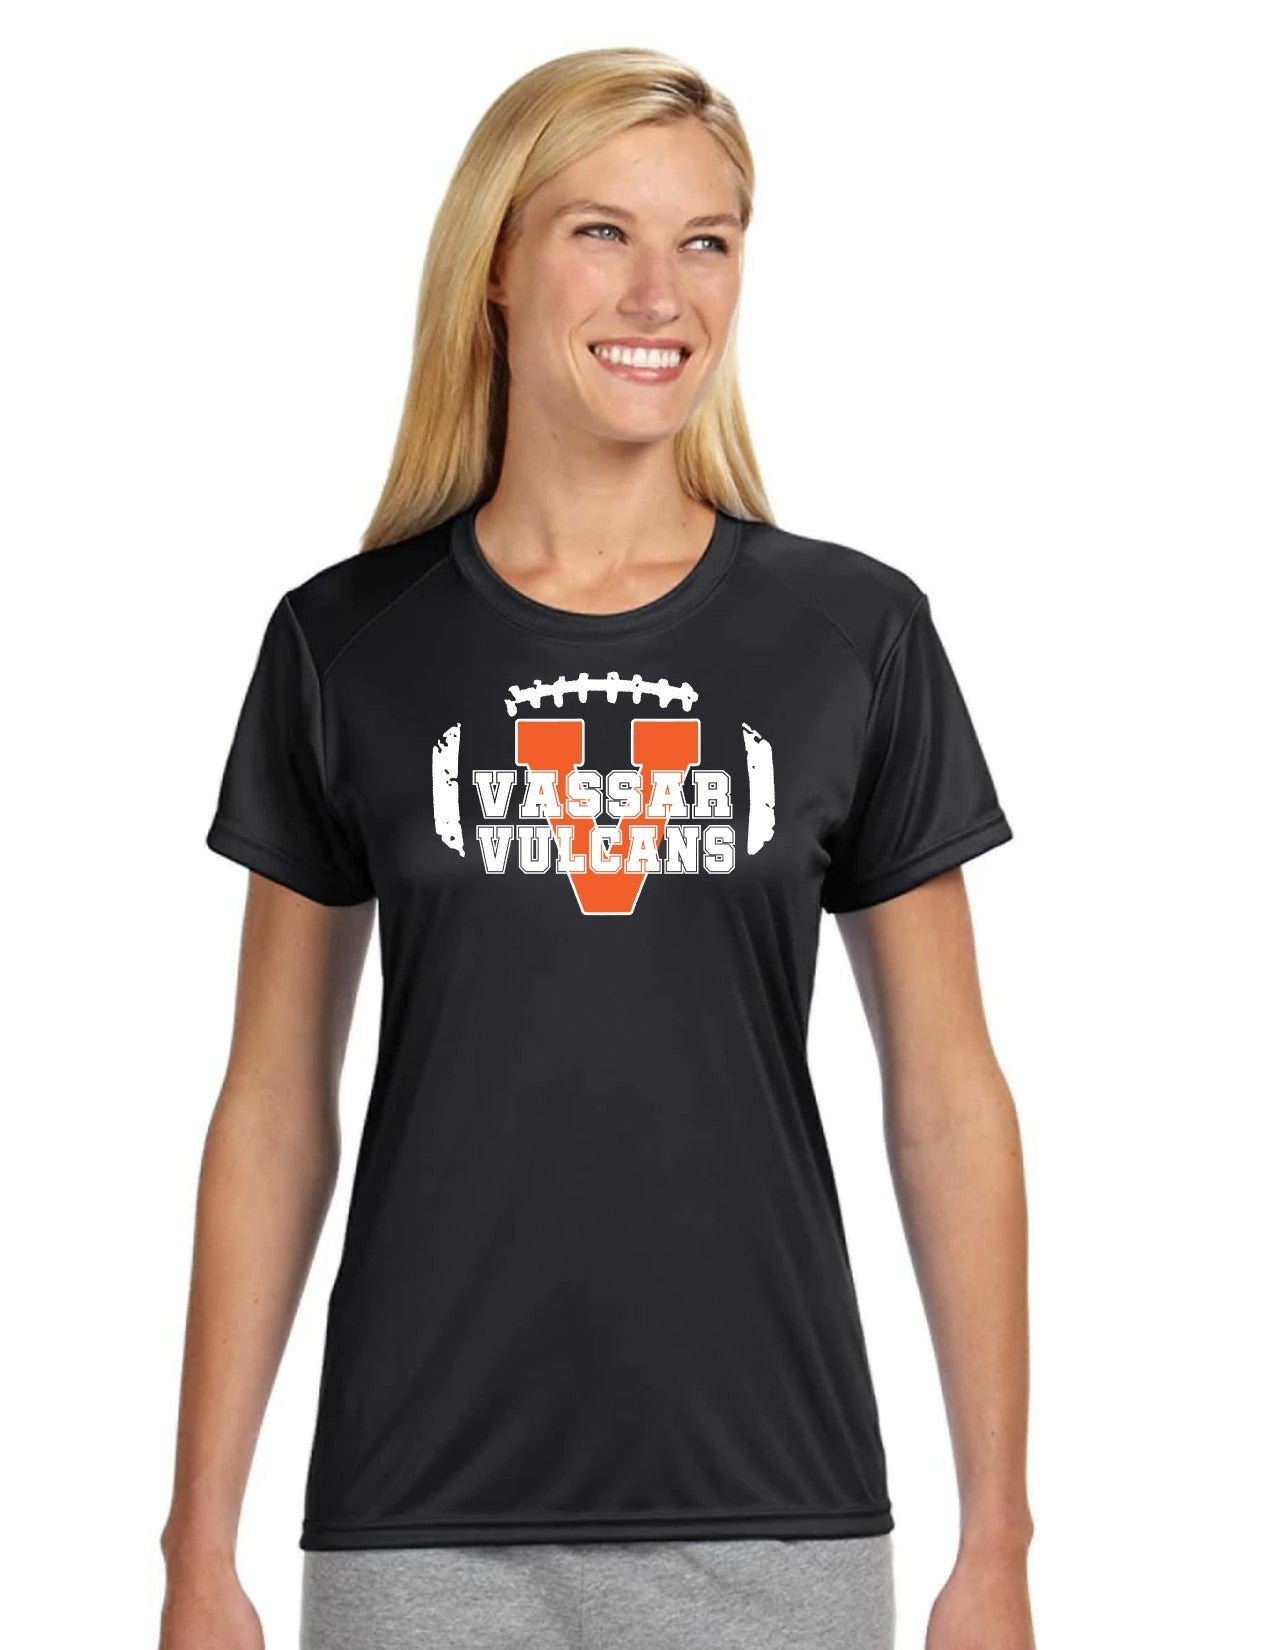 Vassar Football Dri-fit Ladies T-Shirt